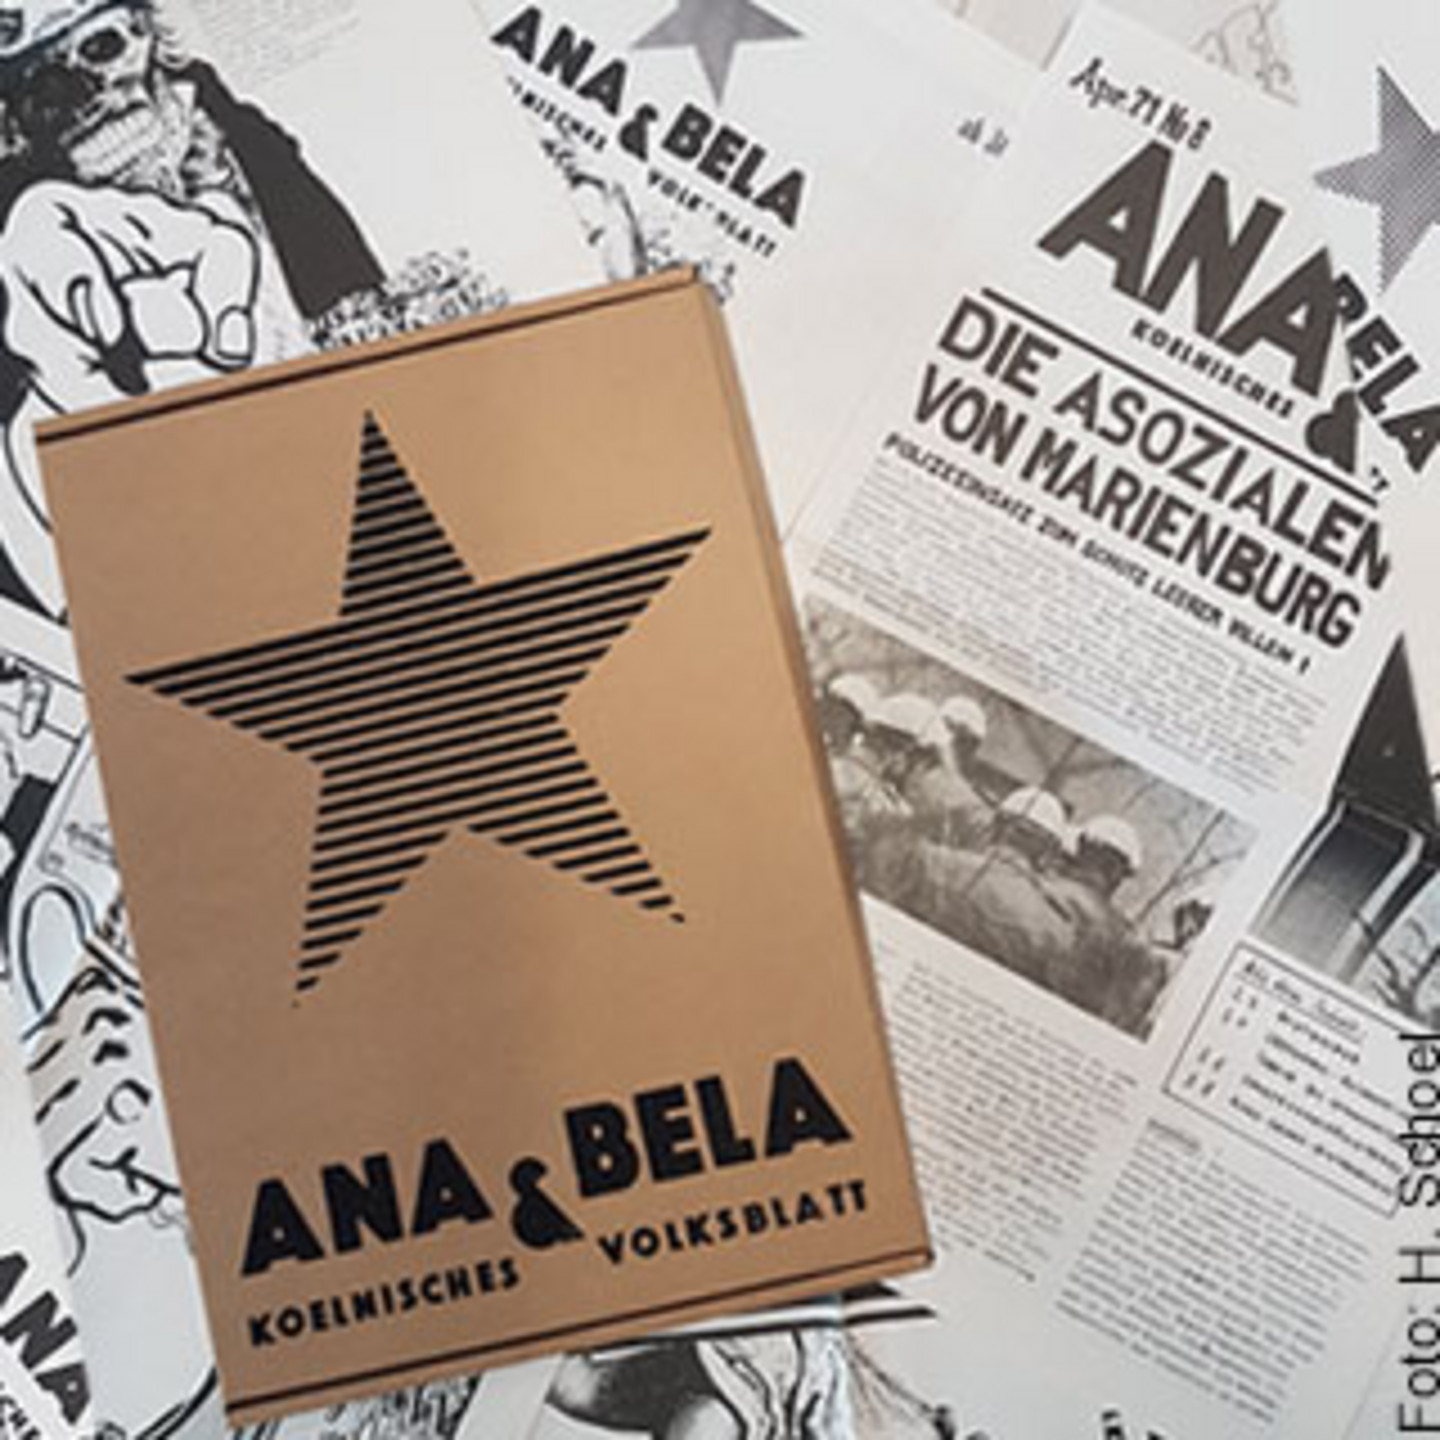 Foto des ersten Reprint von Köln ältestem Underground-Magazin. Darauf abgebildet ist ein großer Stern und in Großbuchstaben die Namen "ANA & BELA".